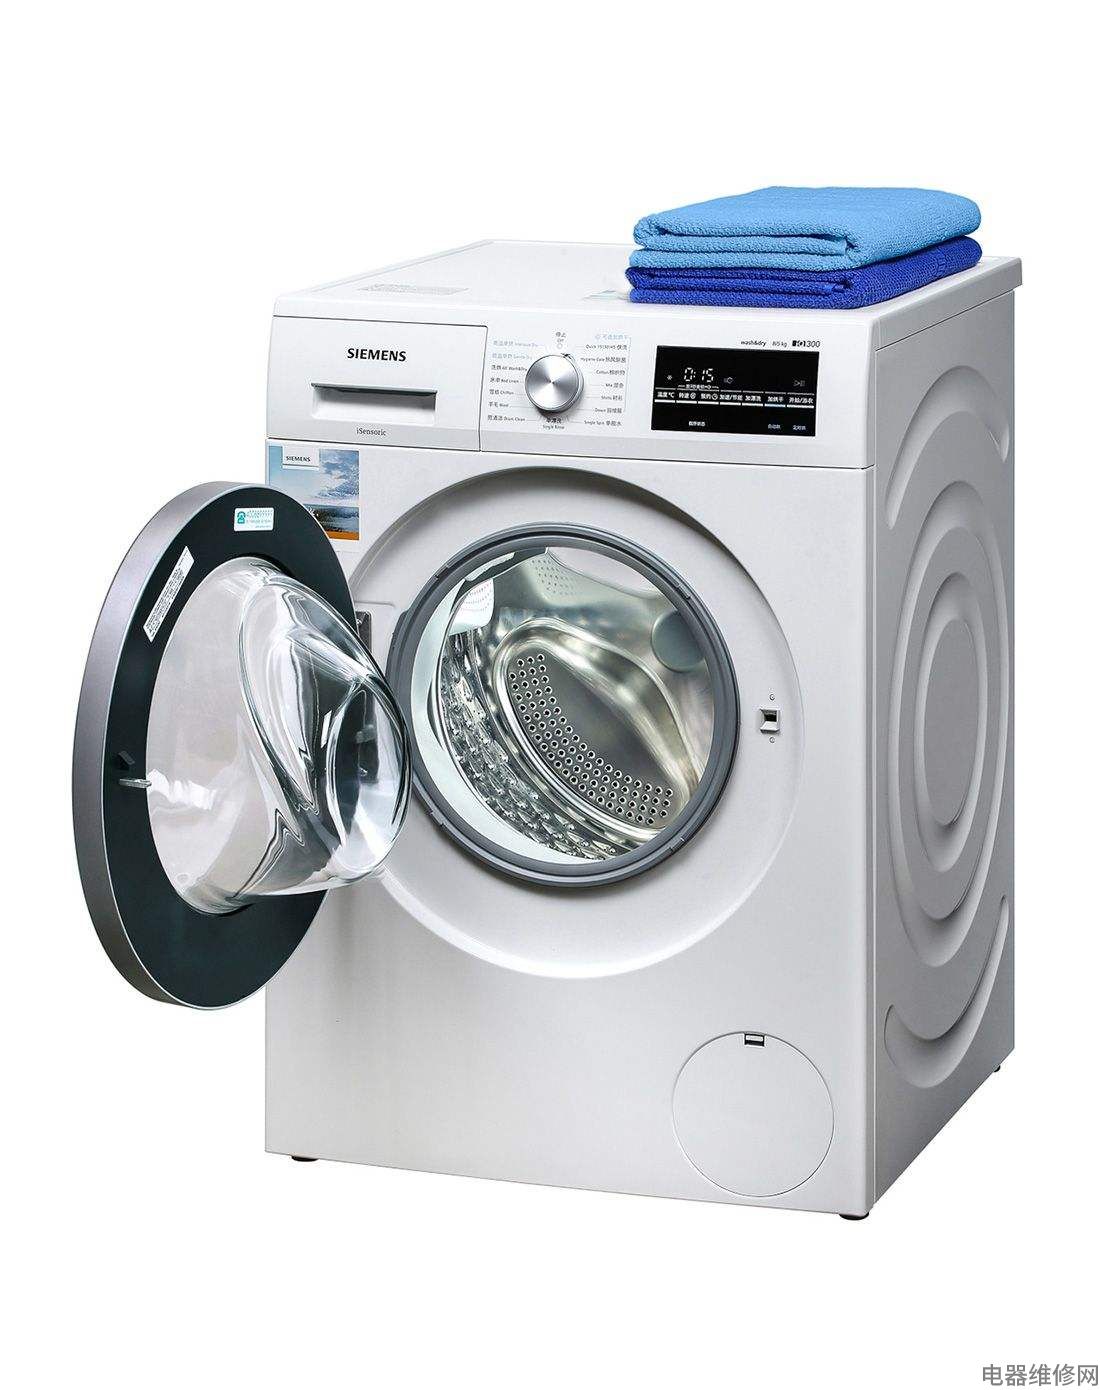 洗衣机漏电是什么原因？